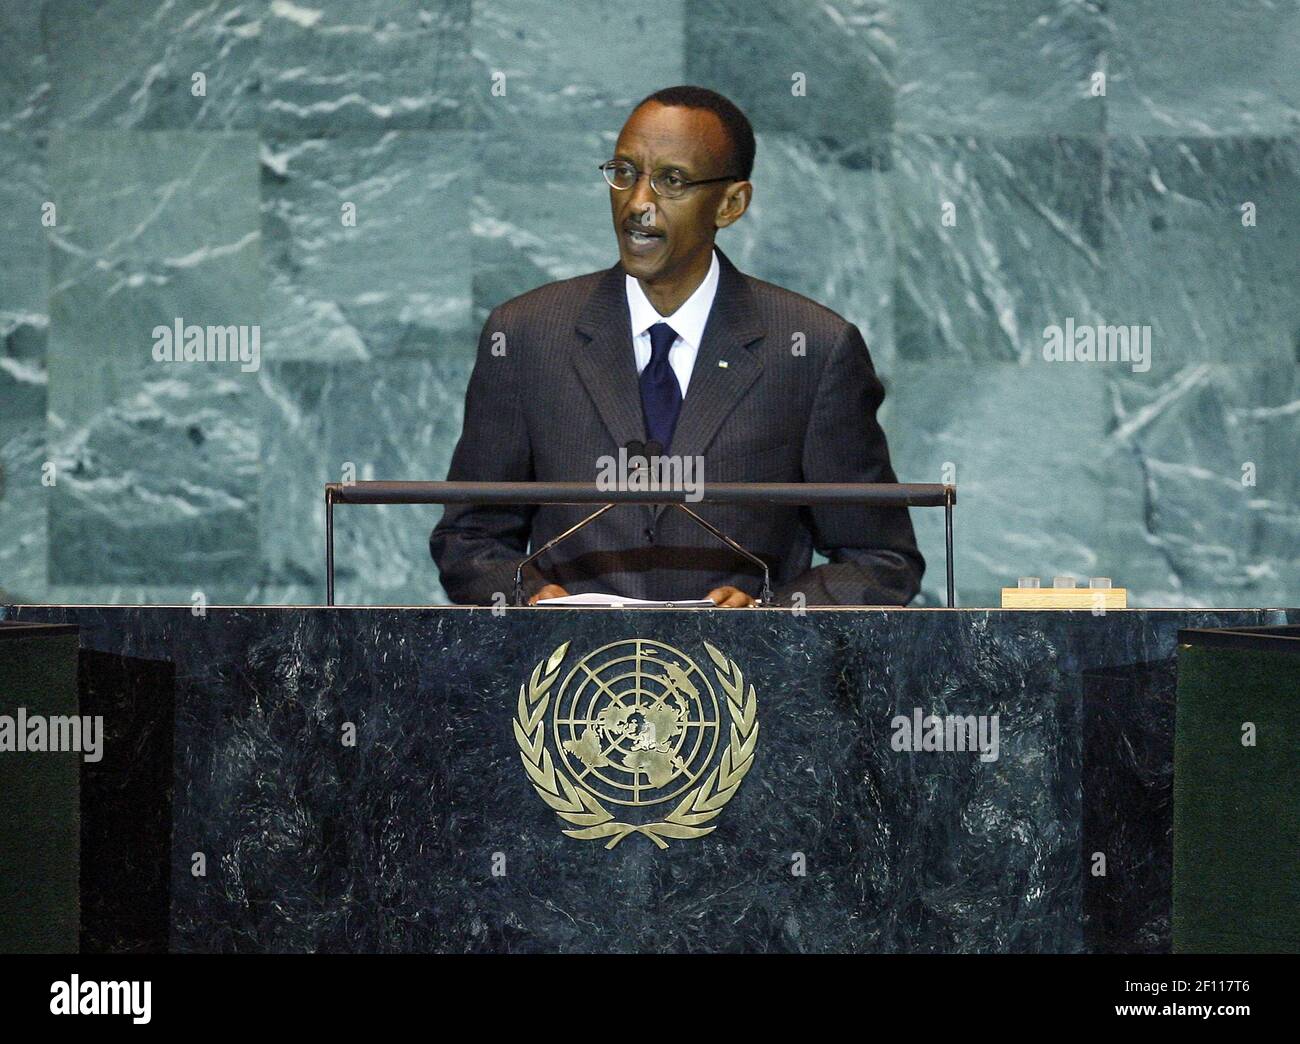 22 de septiembre de 2009 - Nueva York, NY - Paul Kagame, Presidente de la República de Rwanda, hace una alocución en la sesión plenaria de apertura de la Cumbre sobre el Cambio Climático. Convocada por el Secretario General Ban Ki-moon, la Cumbre tiene como objetivo movilizar la voluntad política de más alto nivel necesaria para llegar a un acuerdo sobre el clima mundial justo, eficaz y científicamente ambicioso en la Conferencia de las Naciones Unidas sobre el Cambio Climático que se celebrará en Copenhague en diciembre. Foto: Marco Castro/Foto ONU/Sipa Press/0909222122 Foto de stock